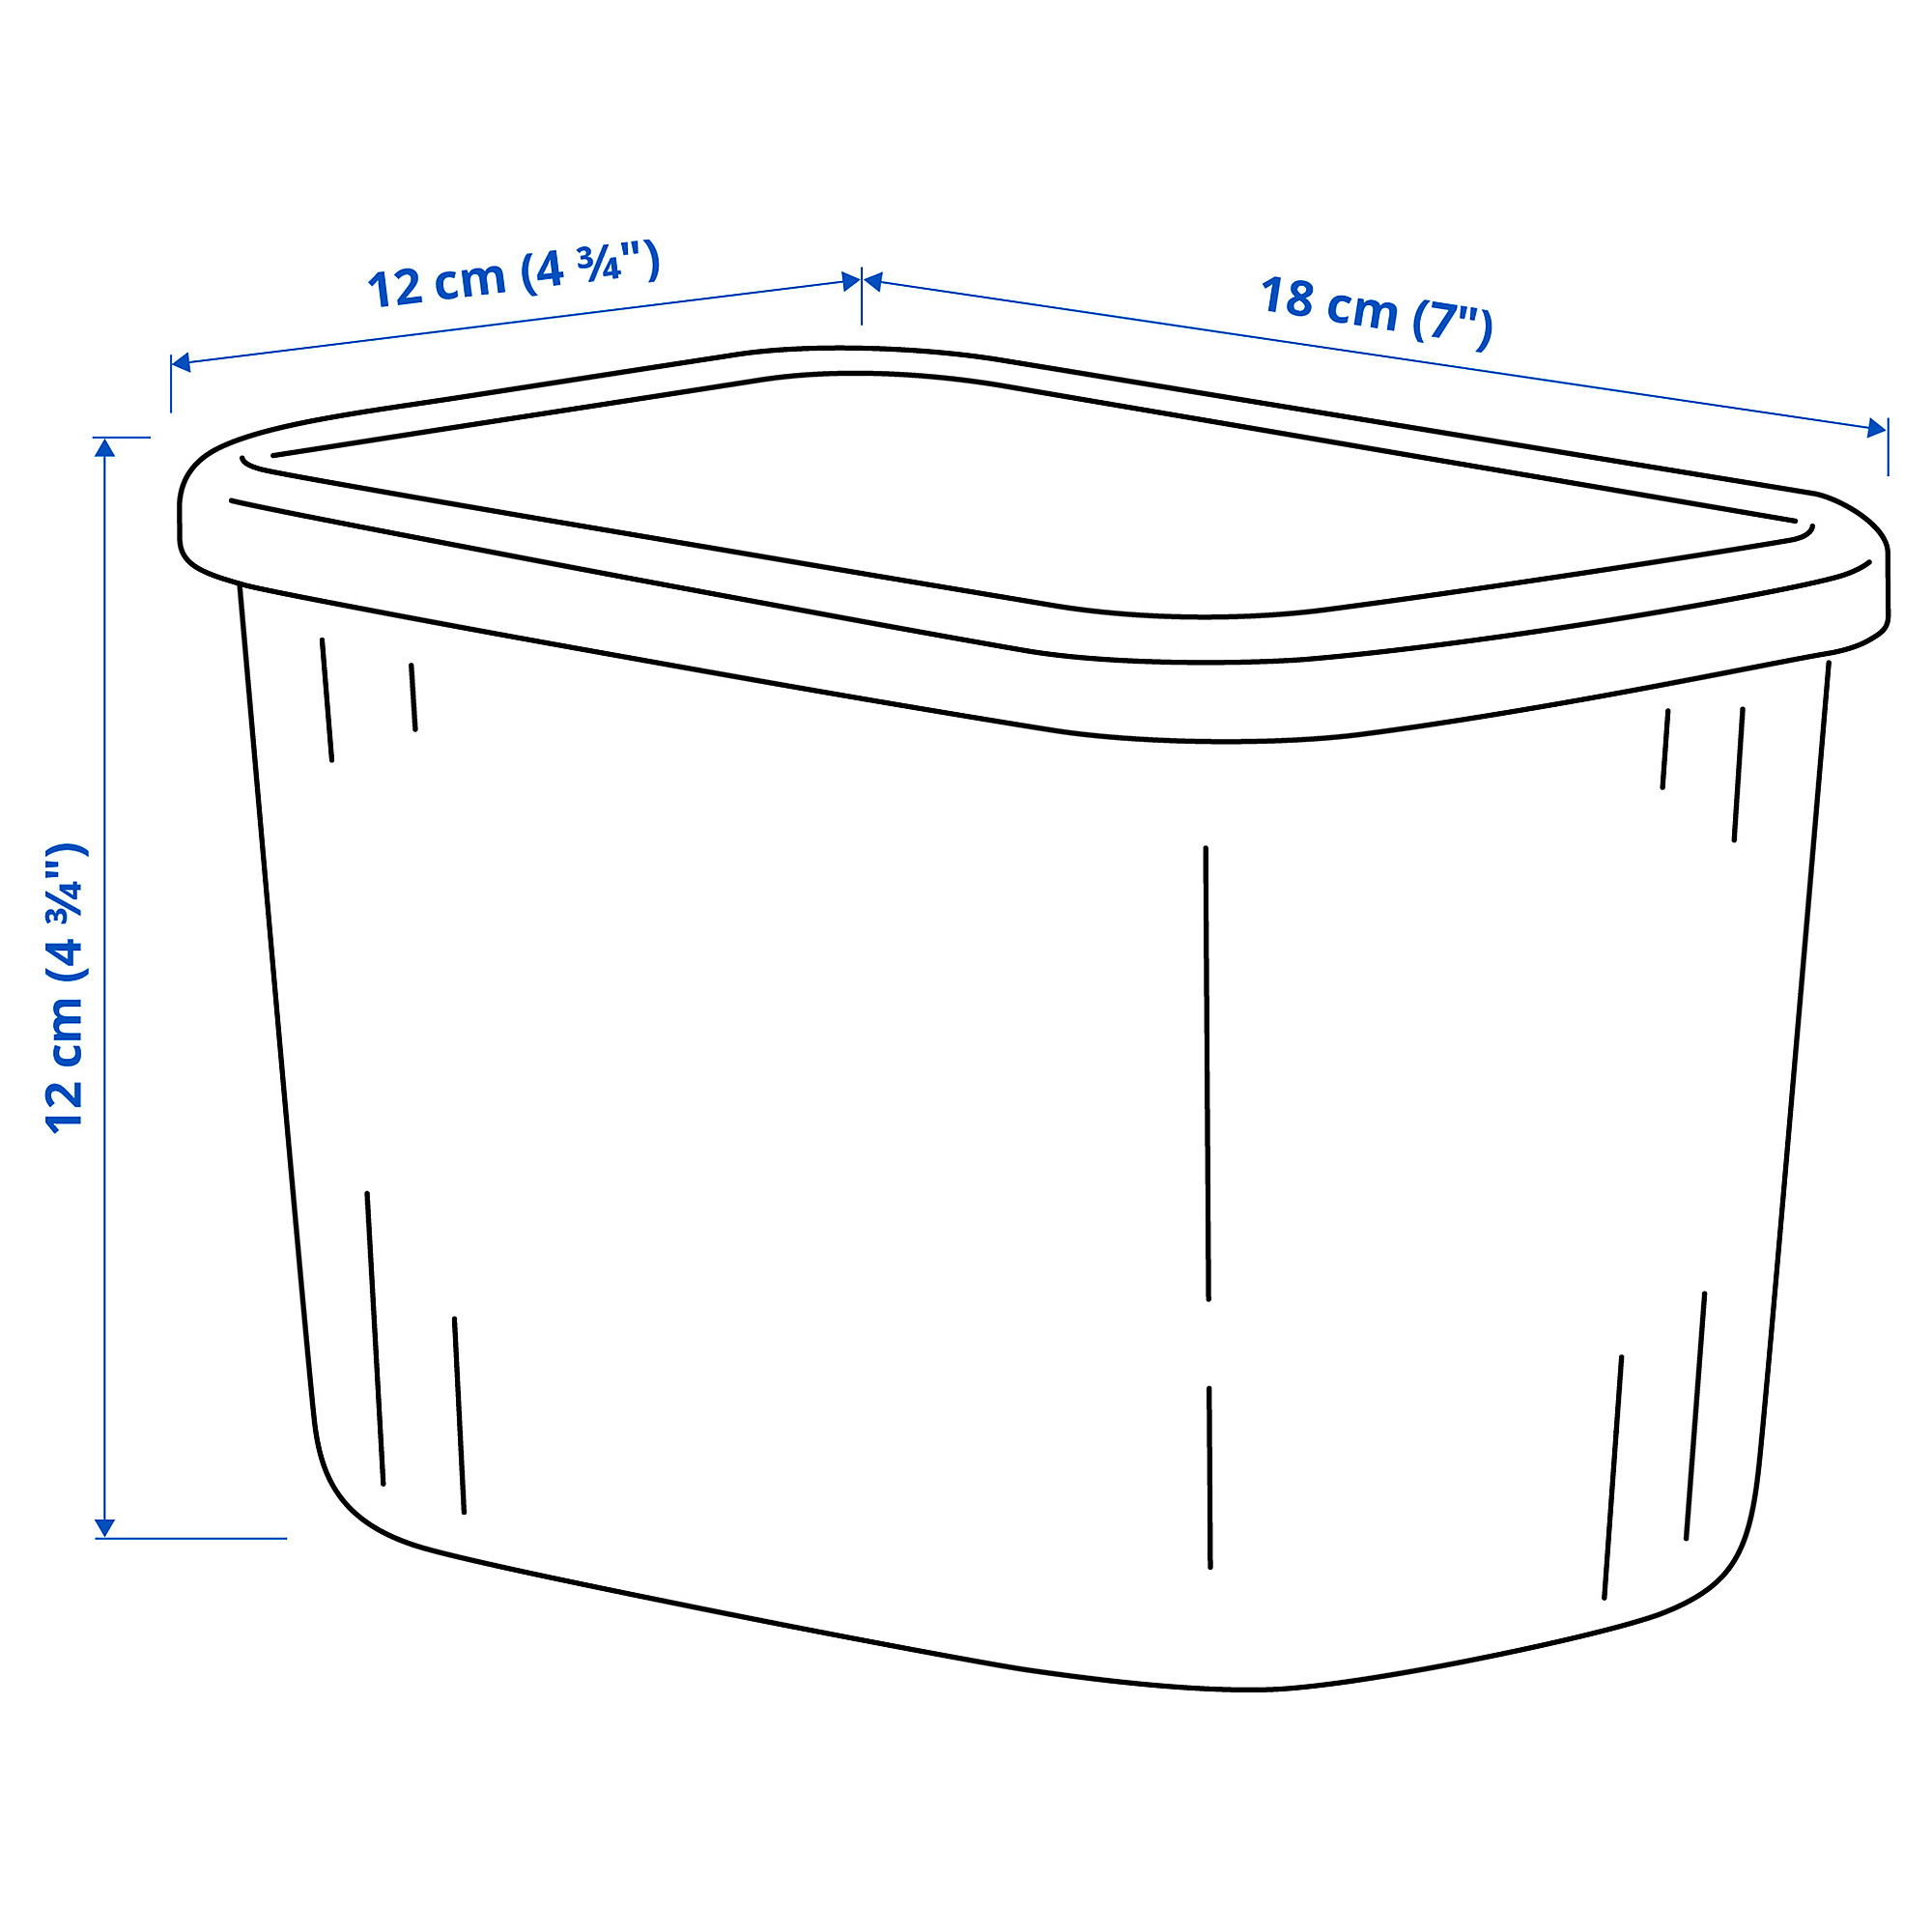 RYKTA storage box with lid